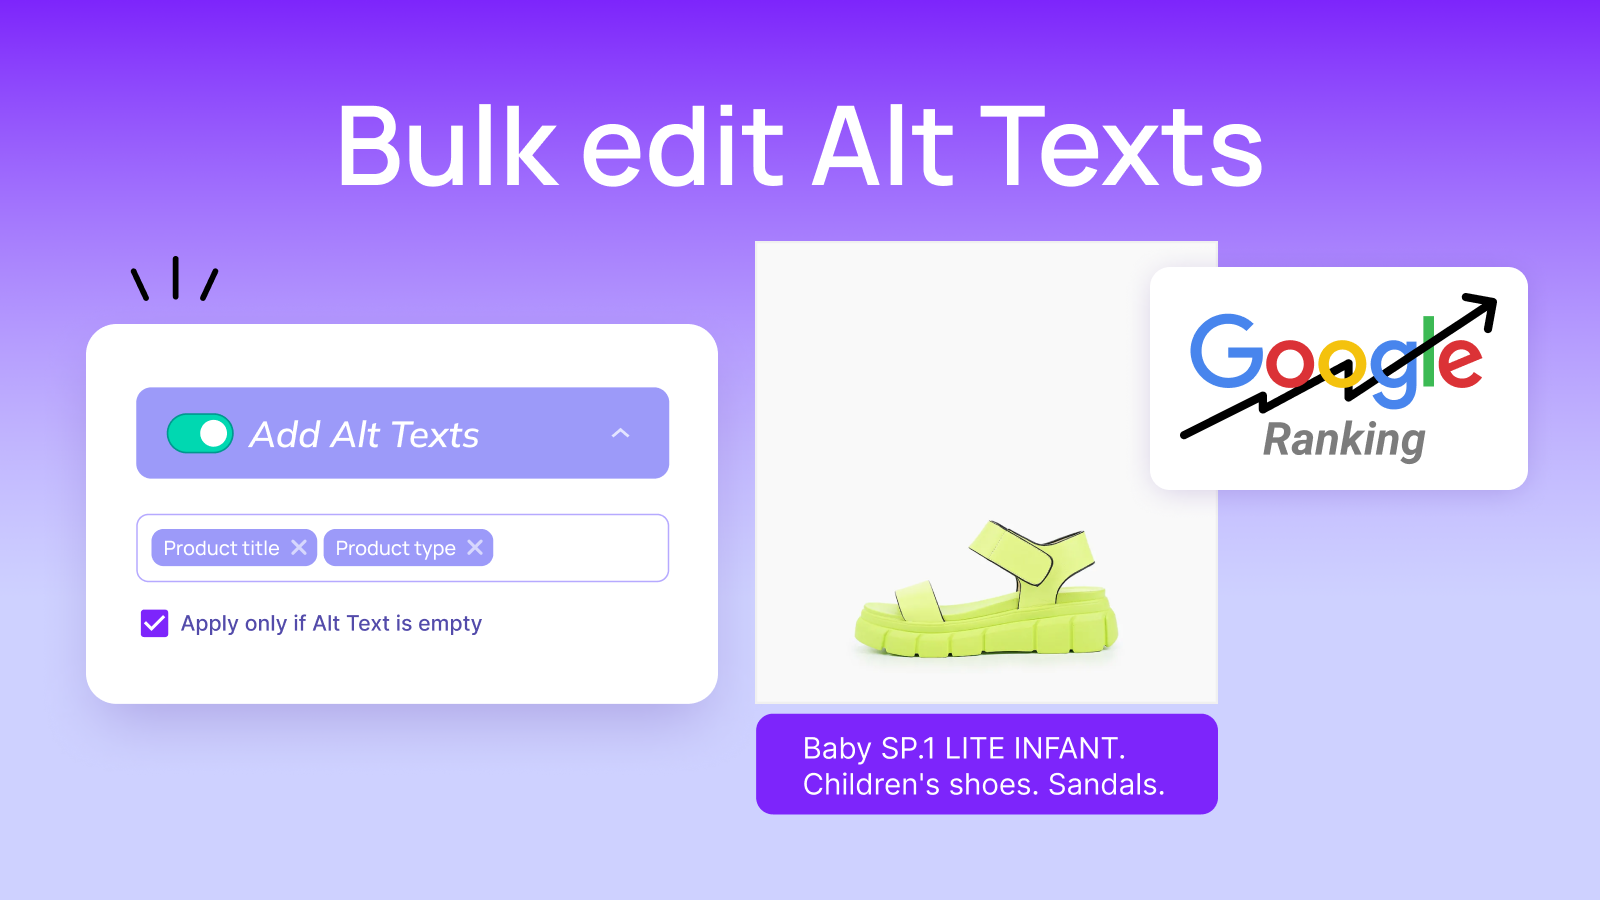 Tilføj "Alt tekster" for at forbedre dine SEO-resultater og Google-rangering